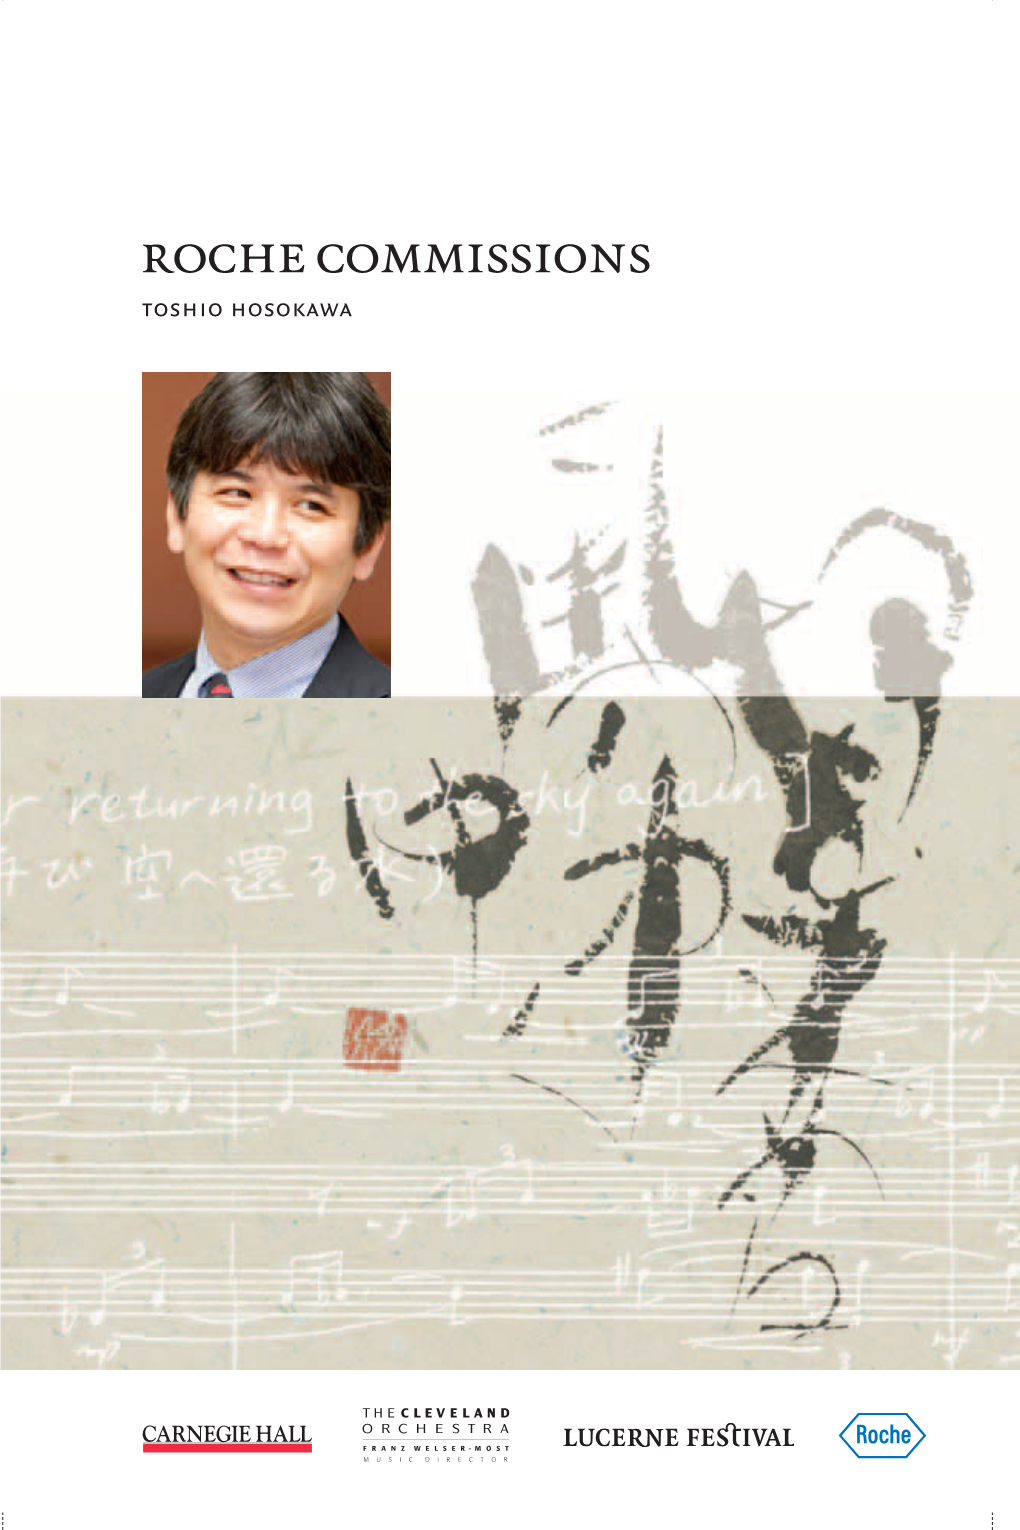 Roche Commissions 2010 Toshio Hosokawa